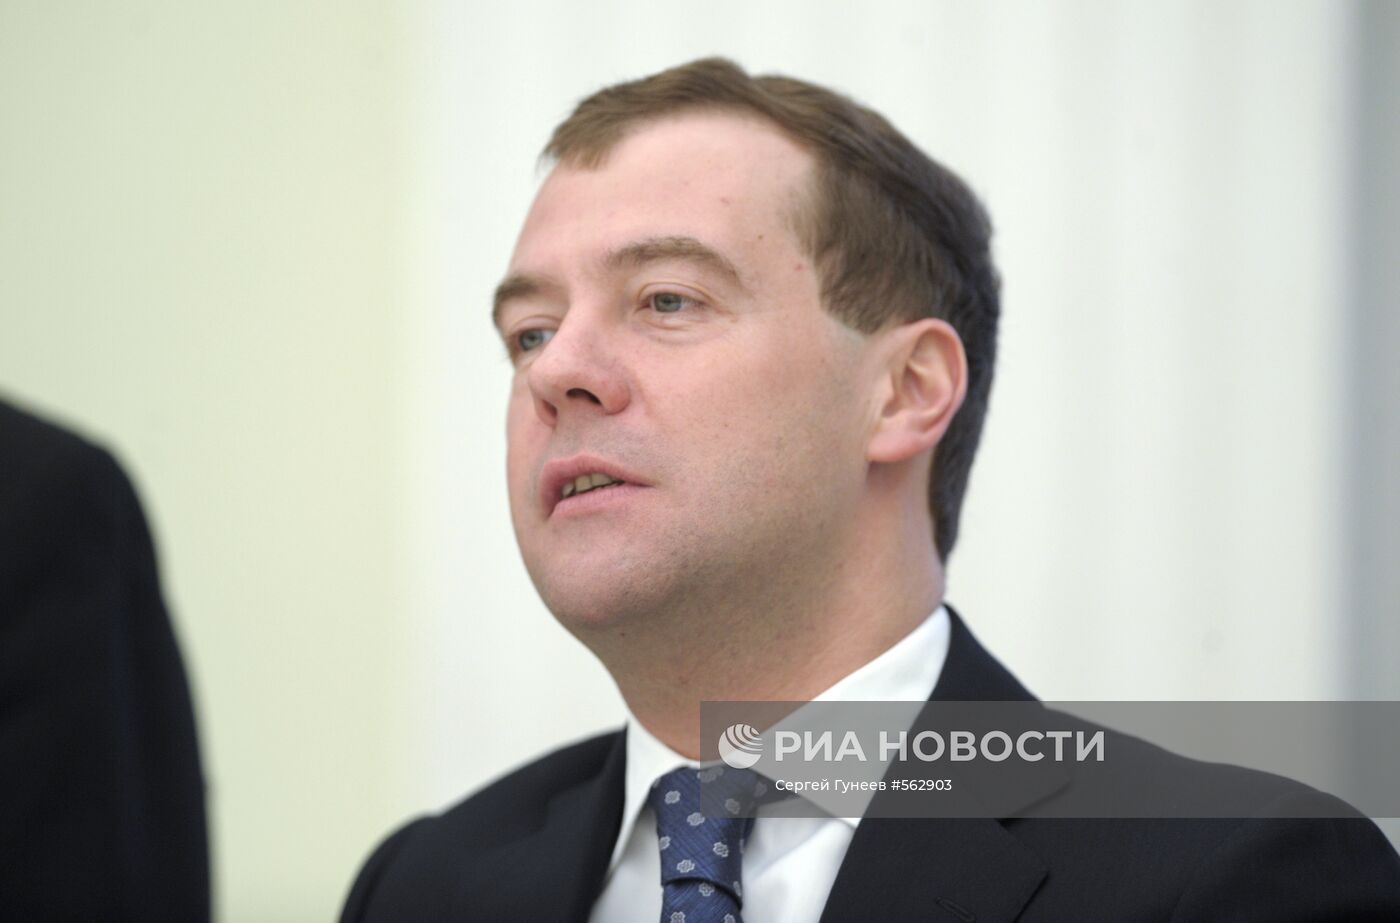 Д.Медведев провел встречу с Б.Джагдео